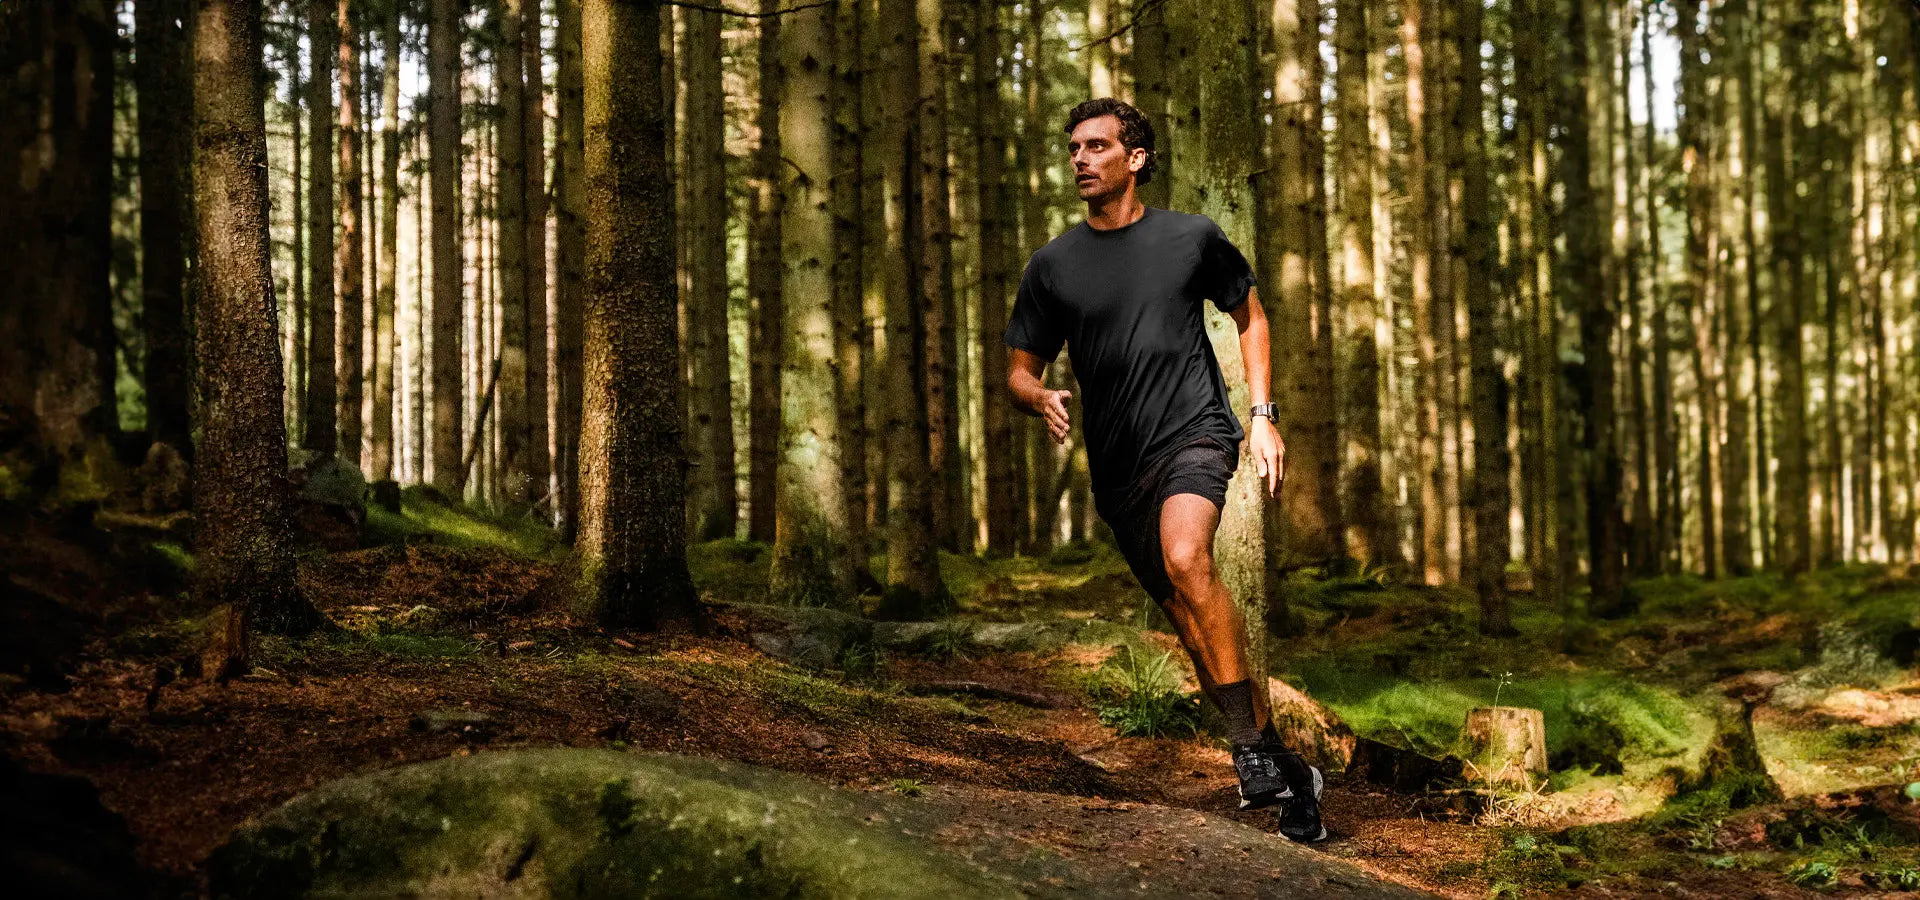 Mand løber gennem skoven i en sort t-shirt